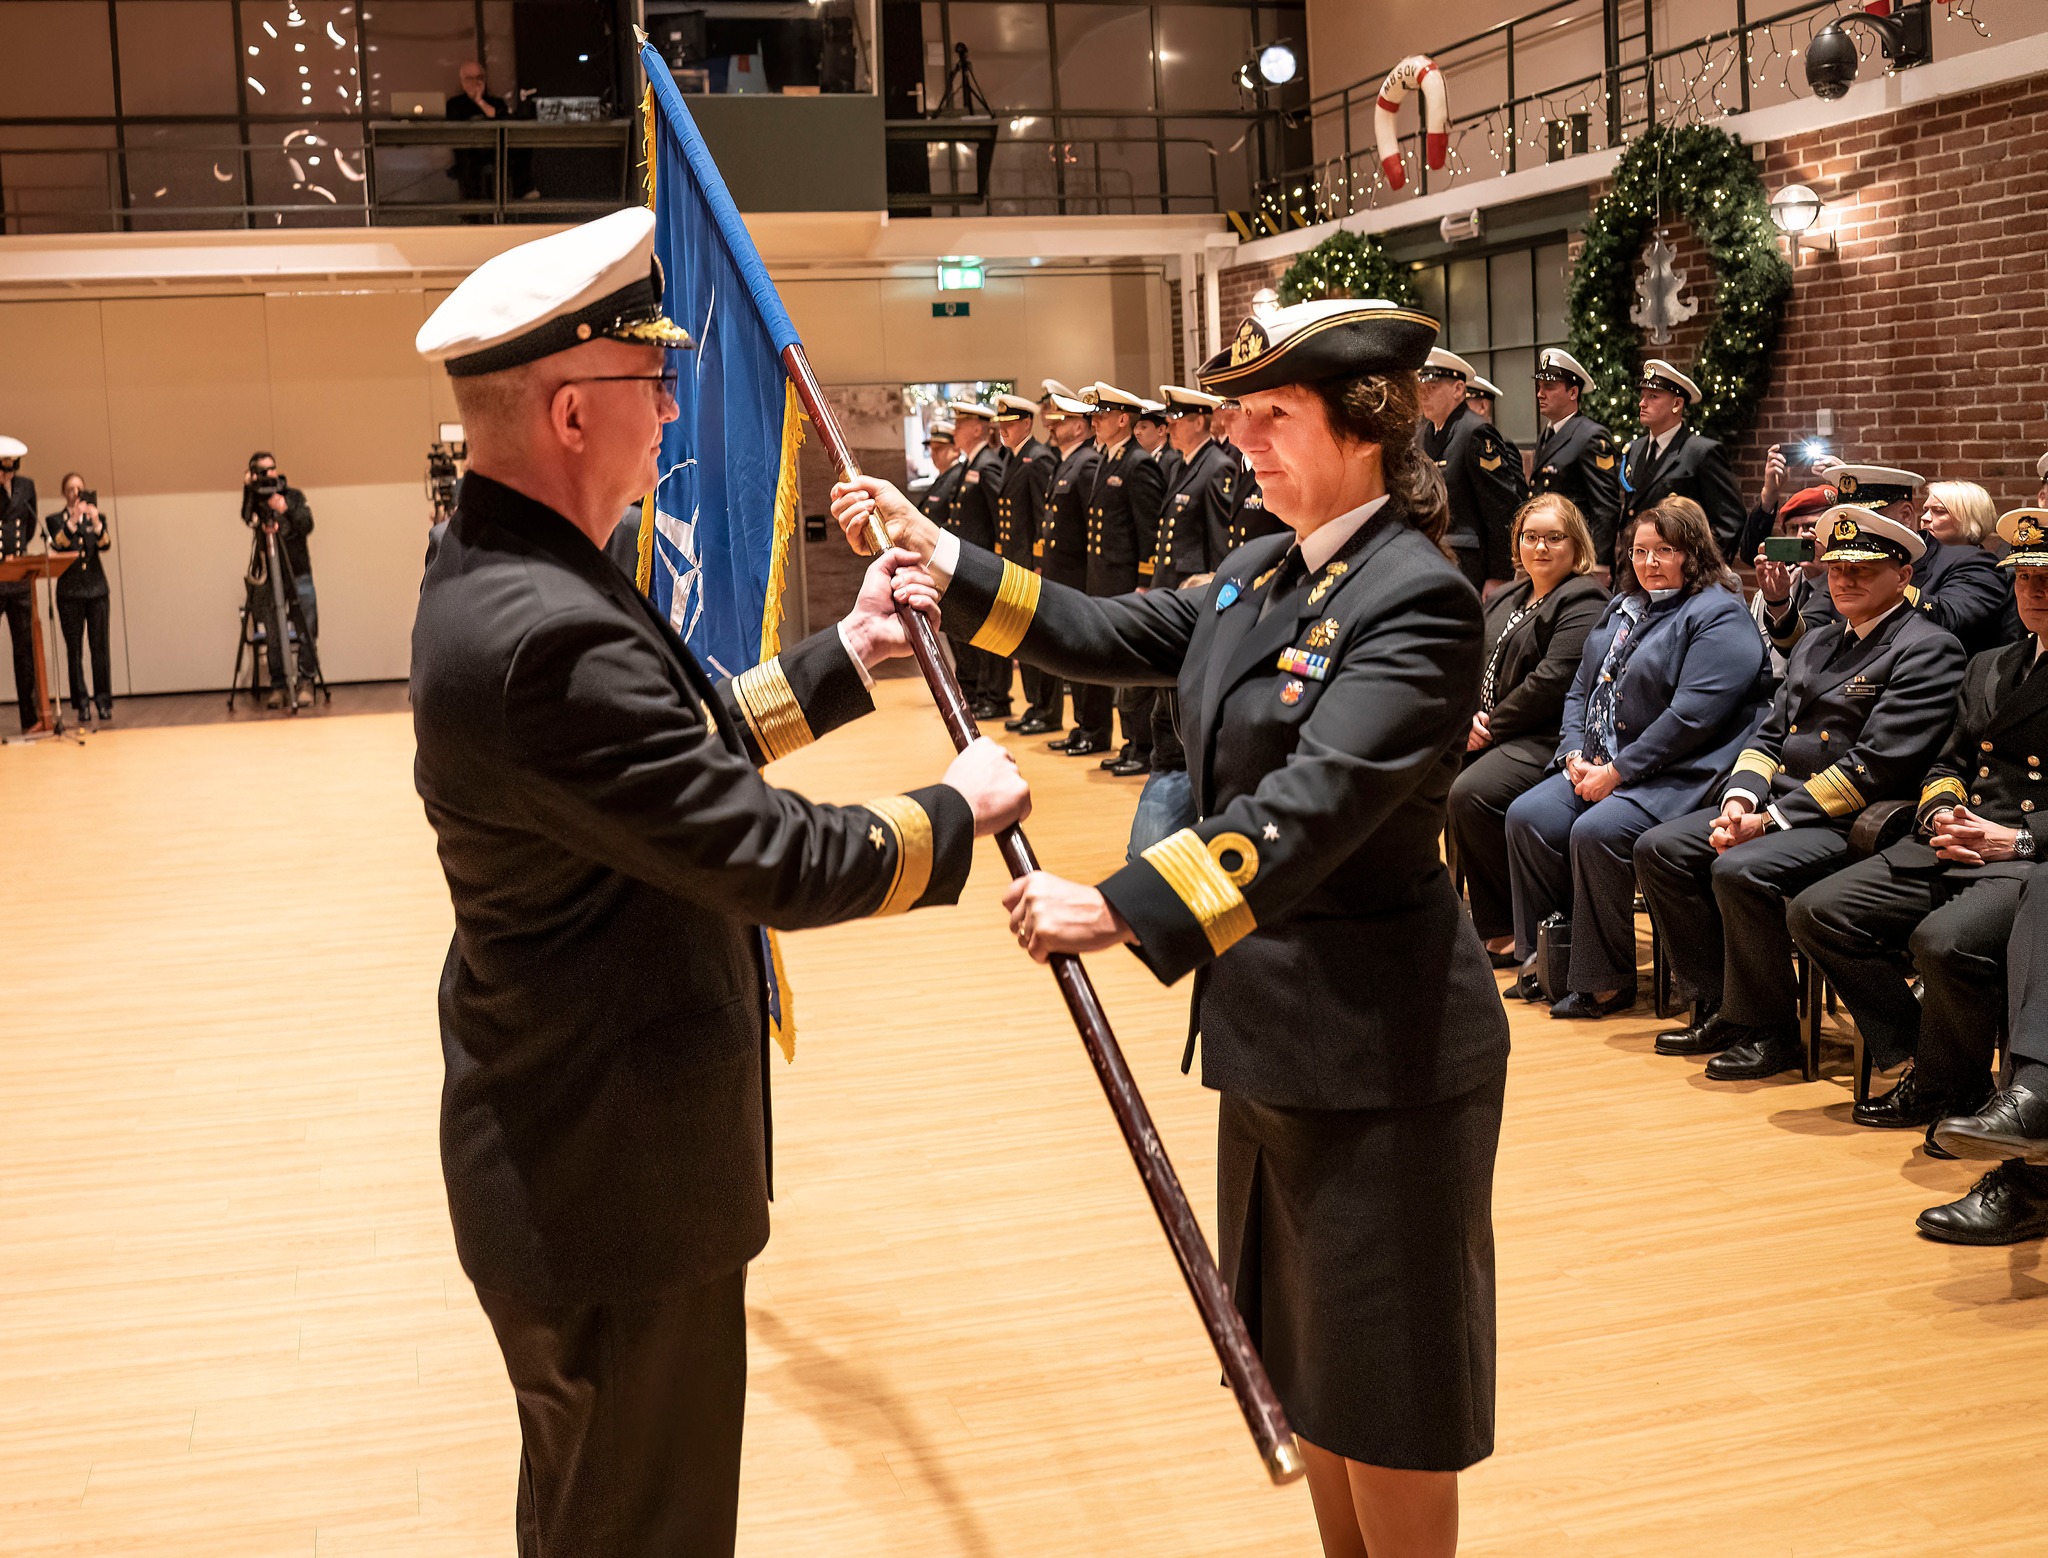 kmdr Jeanette Morang przekazuje flagę NATO kadm. Thorstenowi Marxowi - obecnemu dowódcy SNMG-1// fot. COM_SNMG1, René Tas, Koninklijke Marine